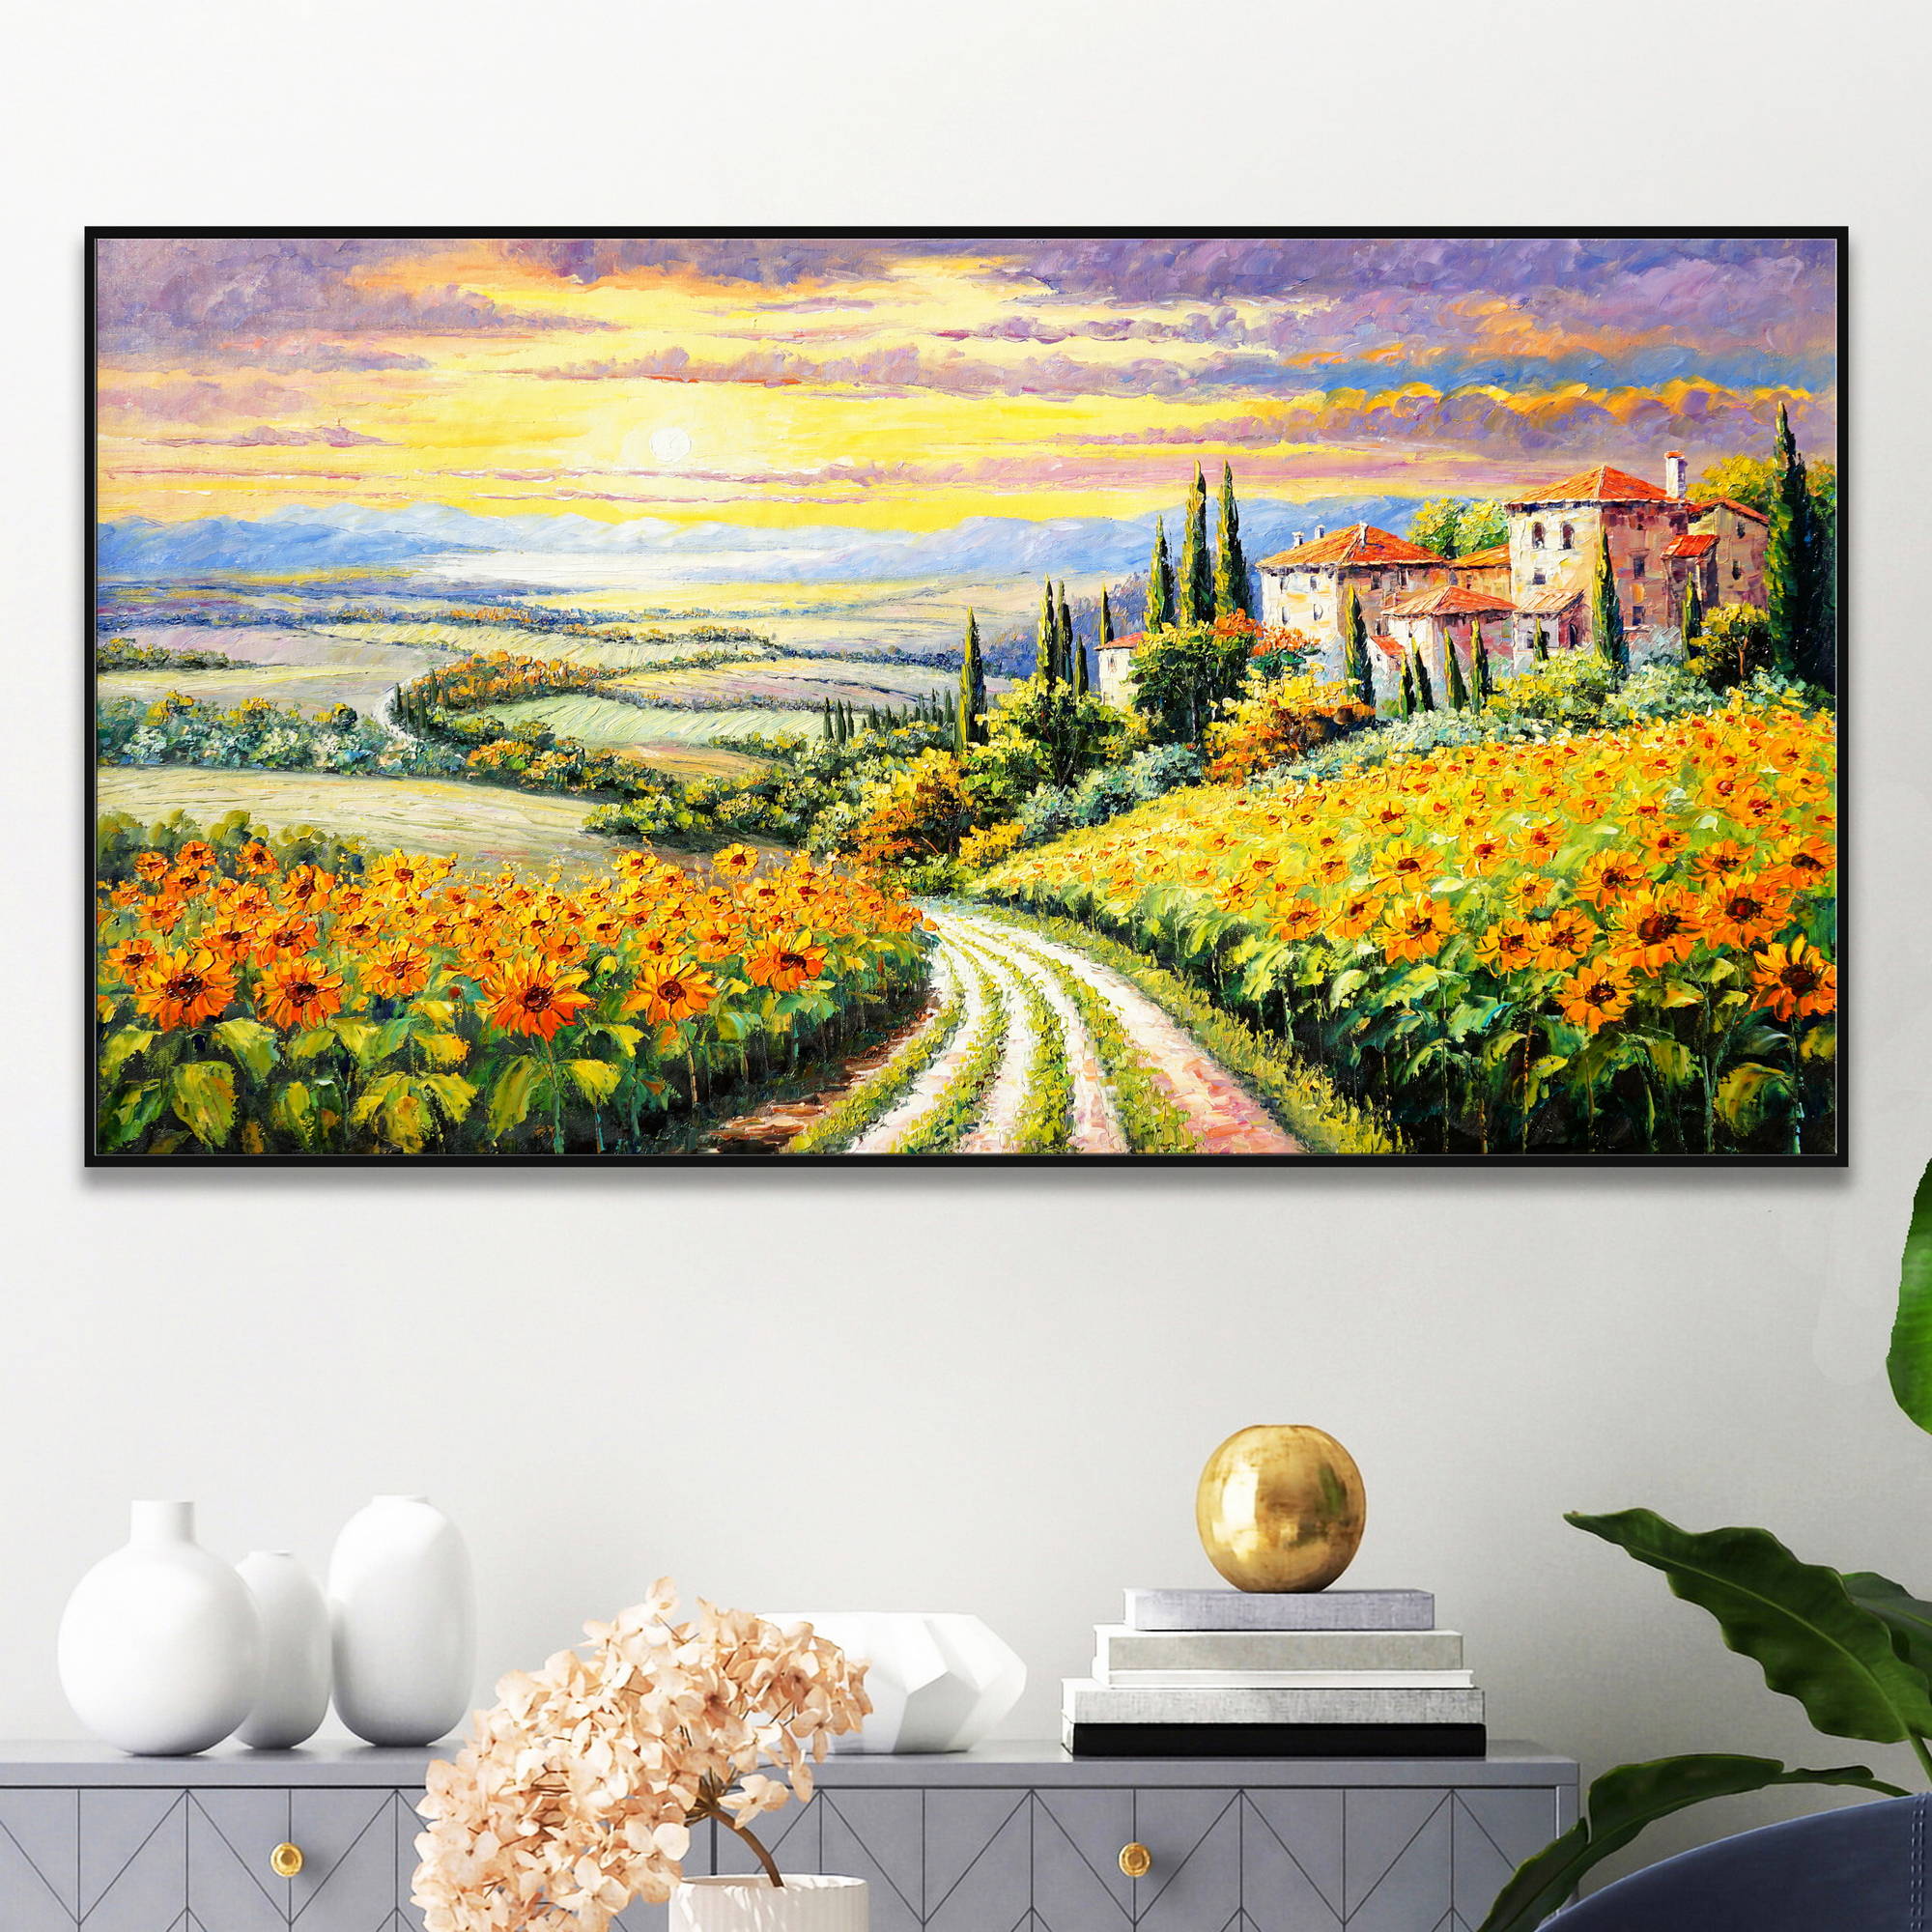 Dipinto impressionista con campo di girasoli e casale al tramonto